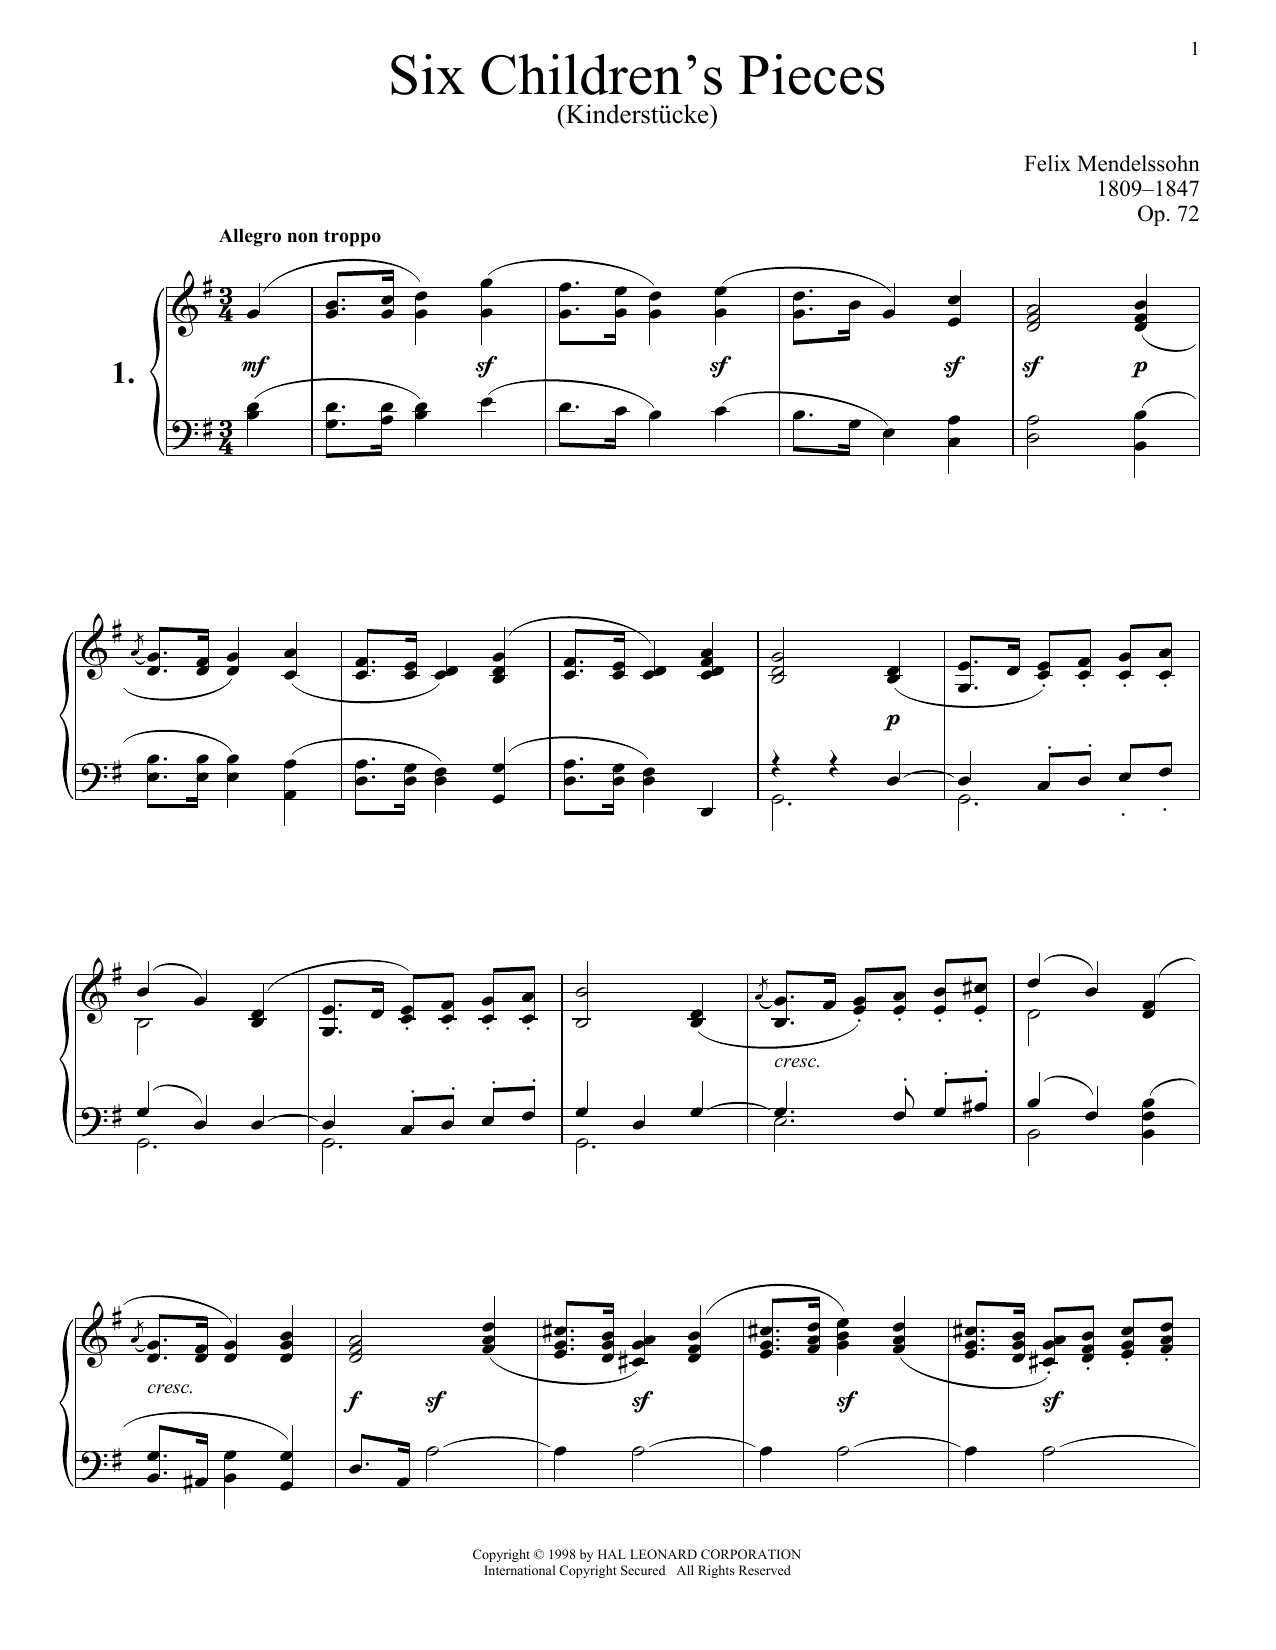 Six Children's Pieces (Kinderstucke), Op. 72 (Piano Solo) von Felix Mendelssohn